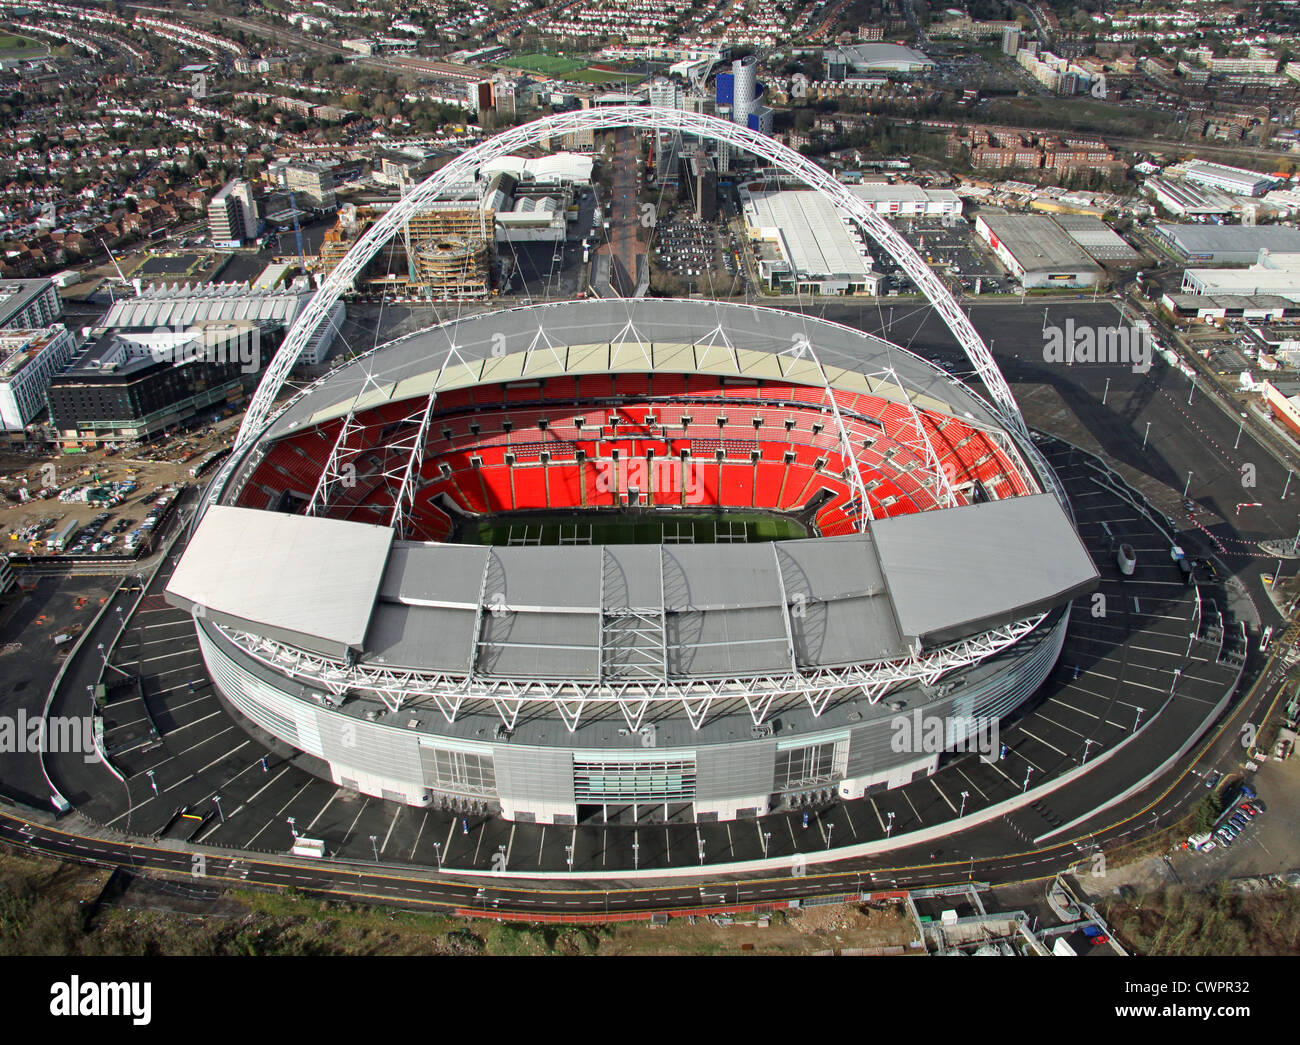 Vue aérienne du stade de Wembley, Londres Banque D'Images